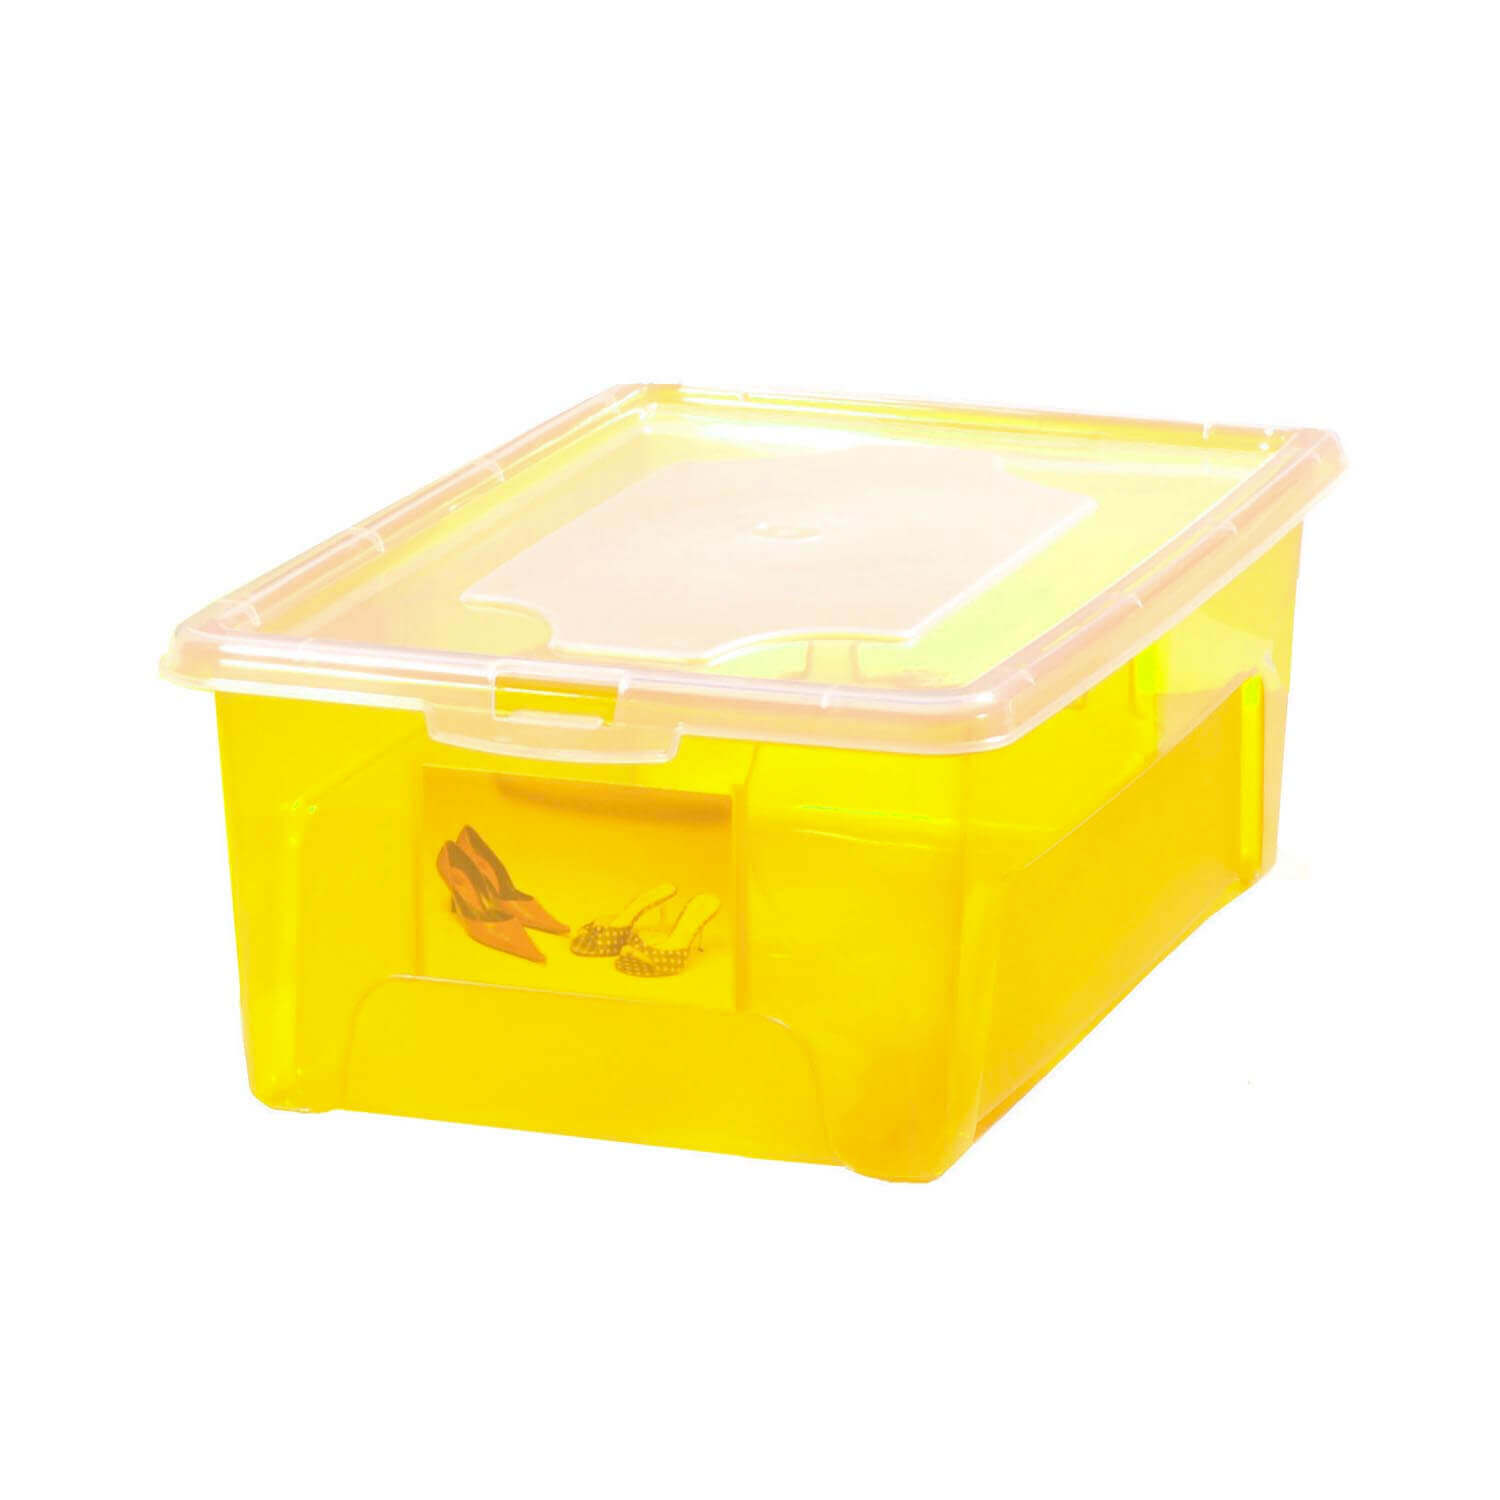 Aufbewahrungsbox "Easybox" 5 L in gelb, Kunststoffbox